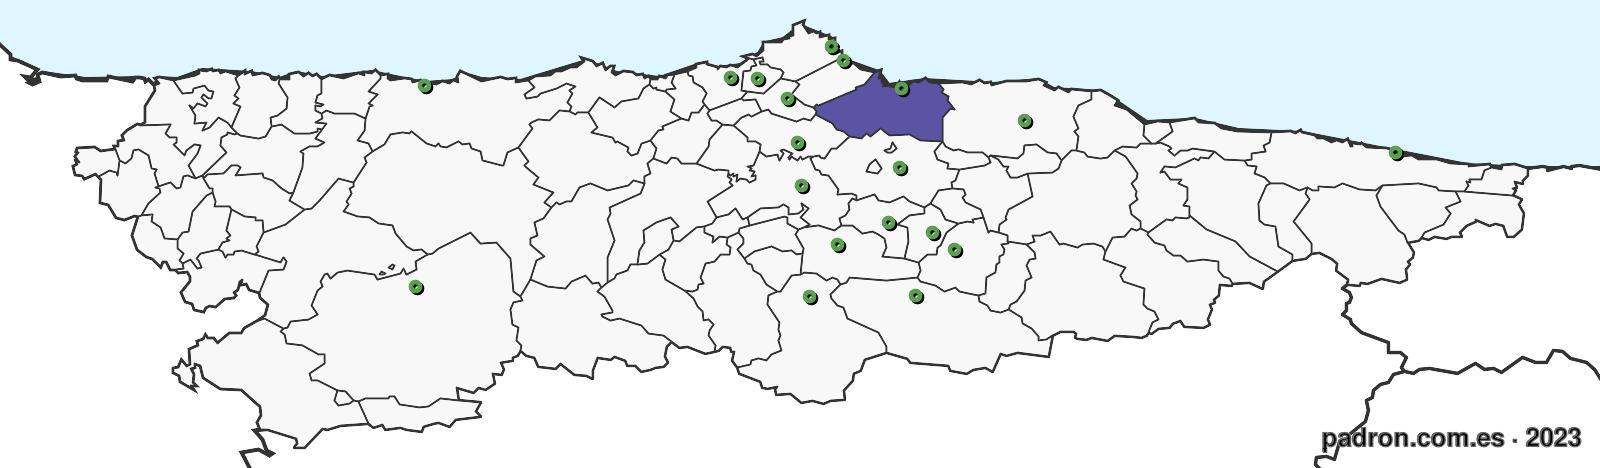 sierraleoneses en asturias.